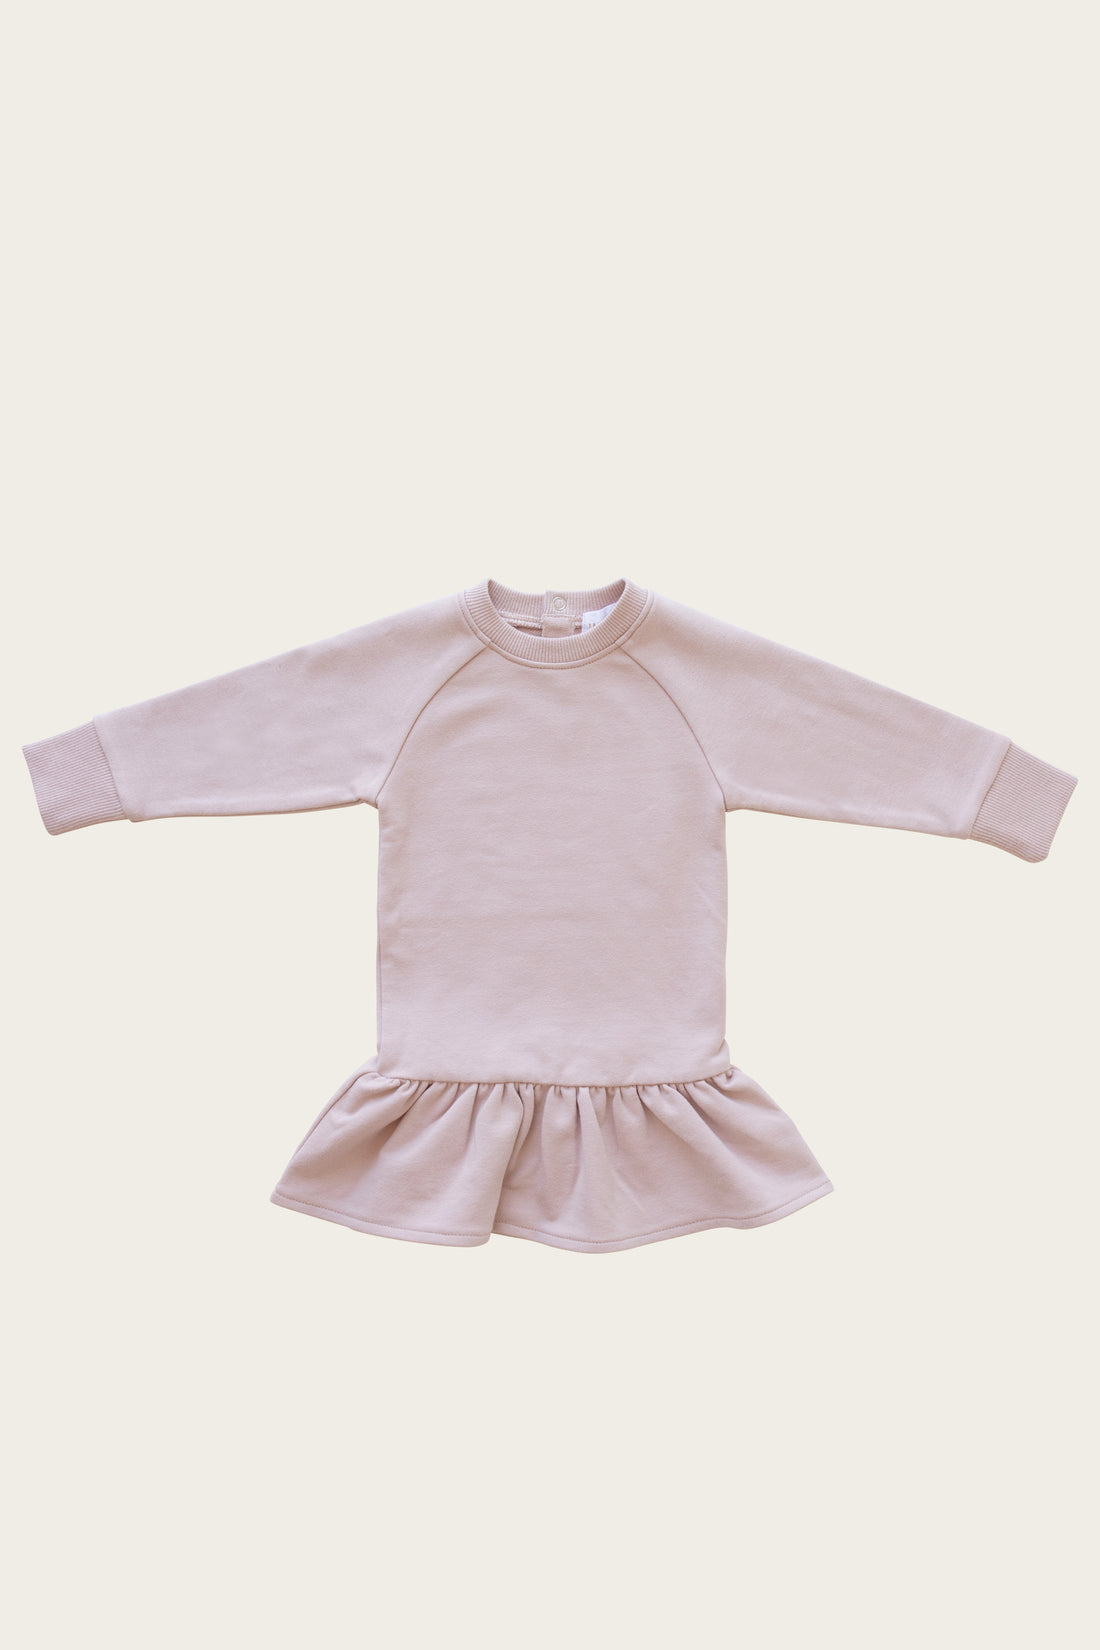 Maisie Sweater Dress - Amelie Childrens Dress from Jamie Kay NZ